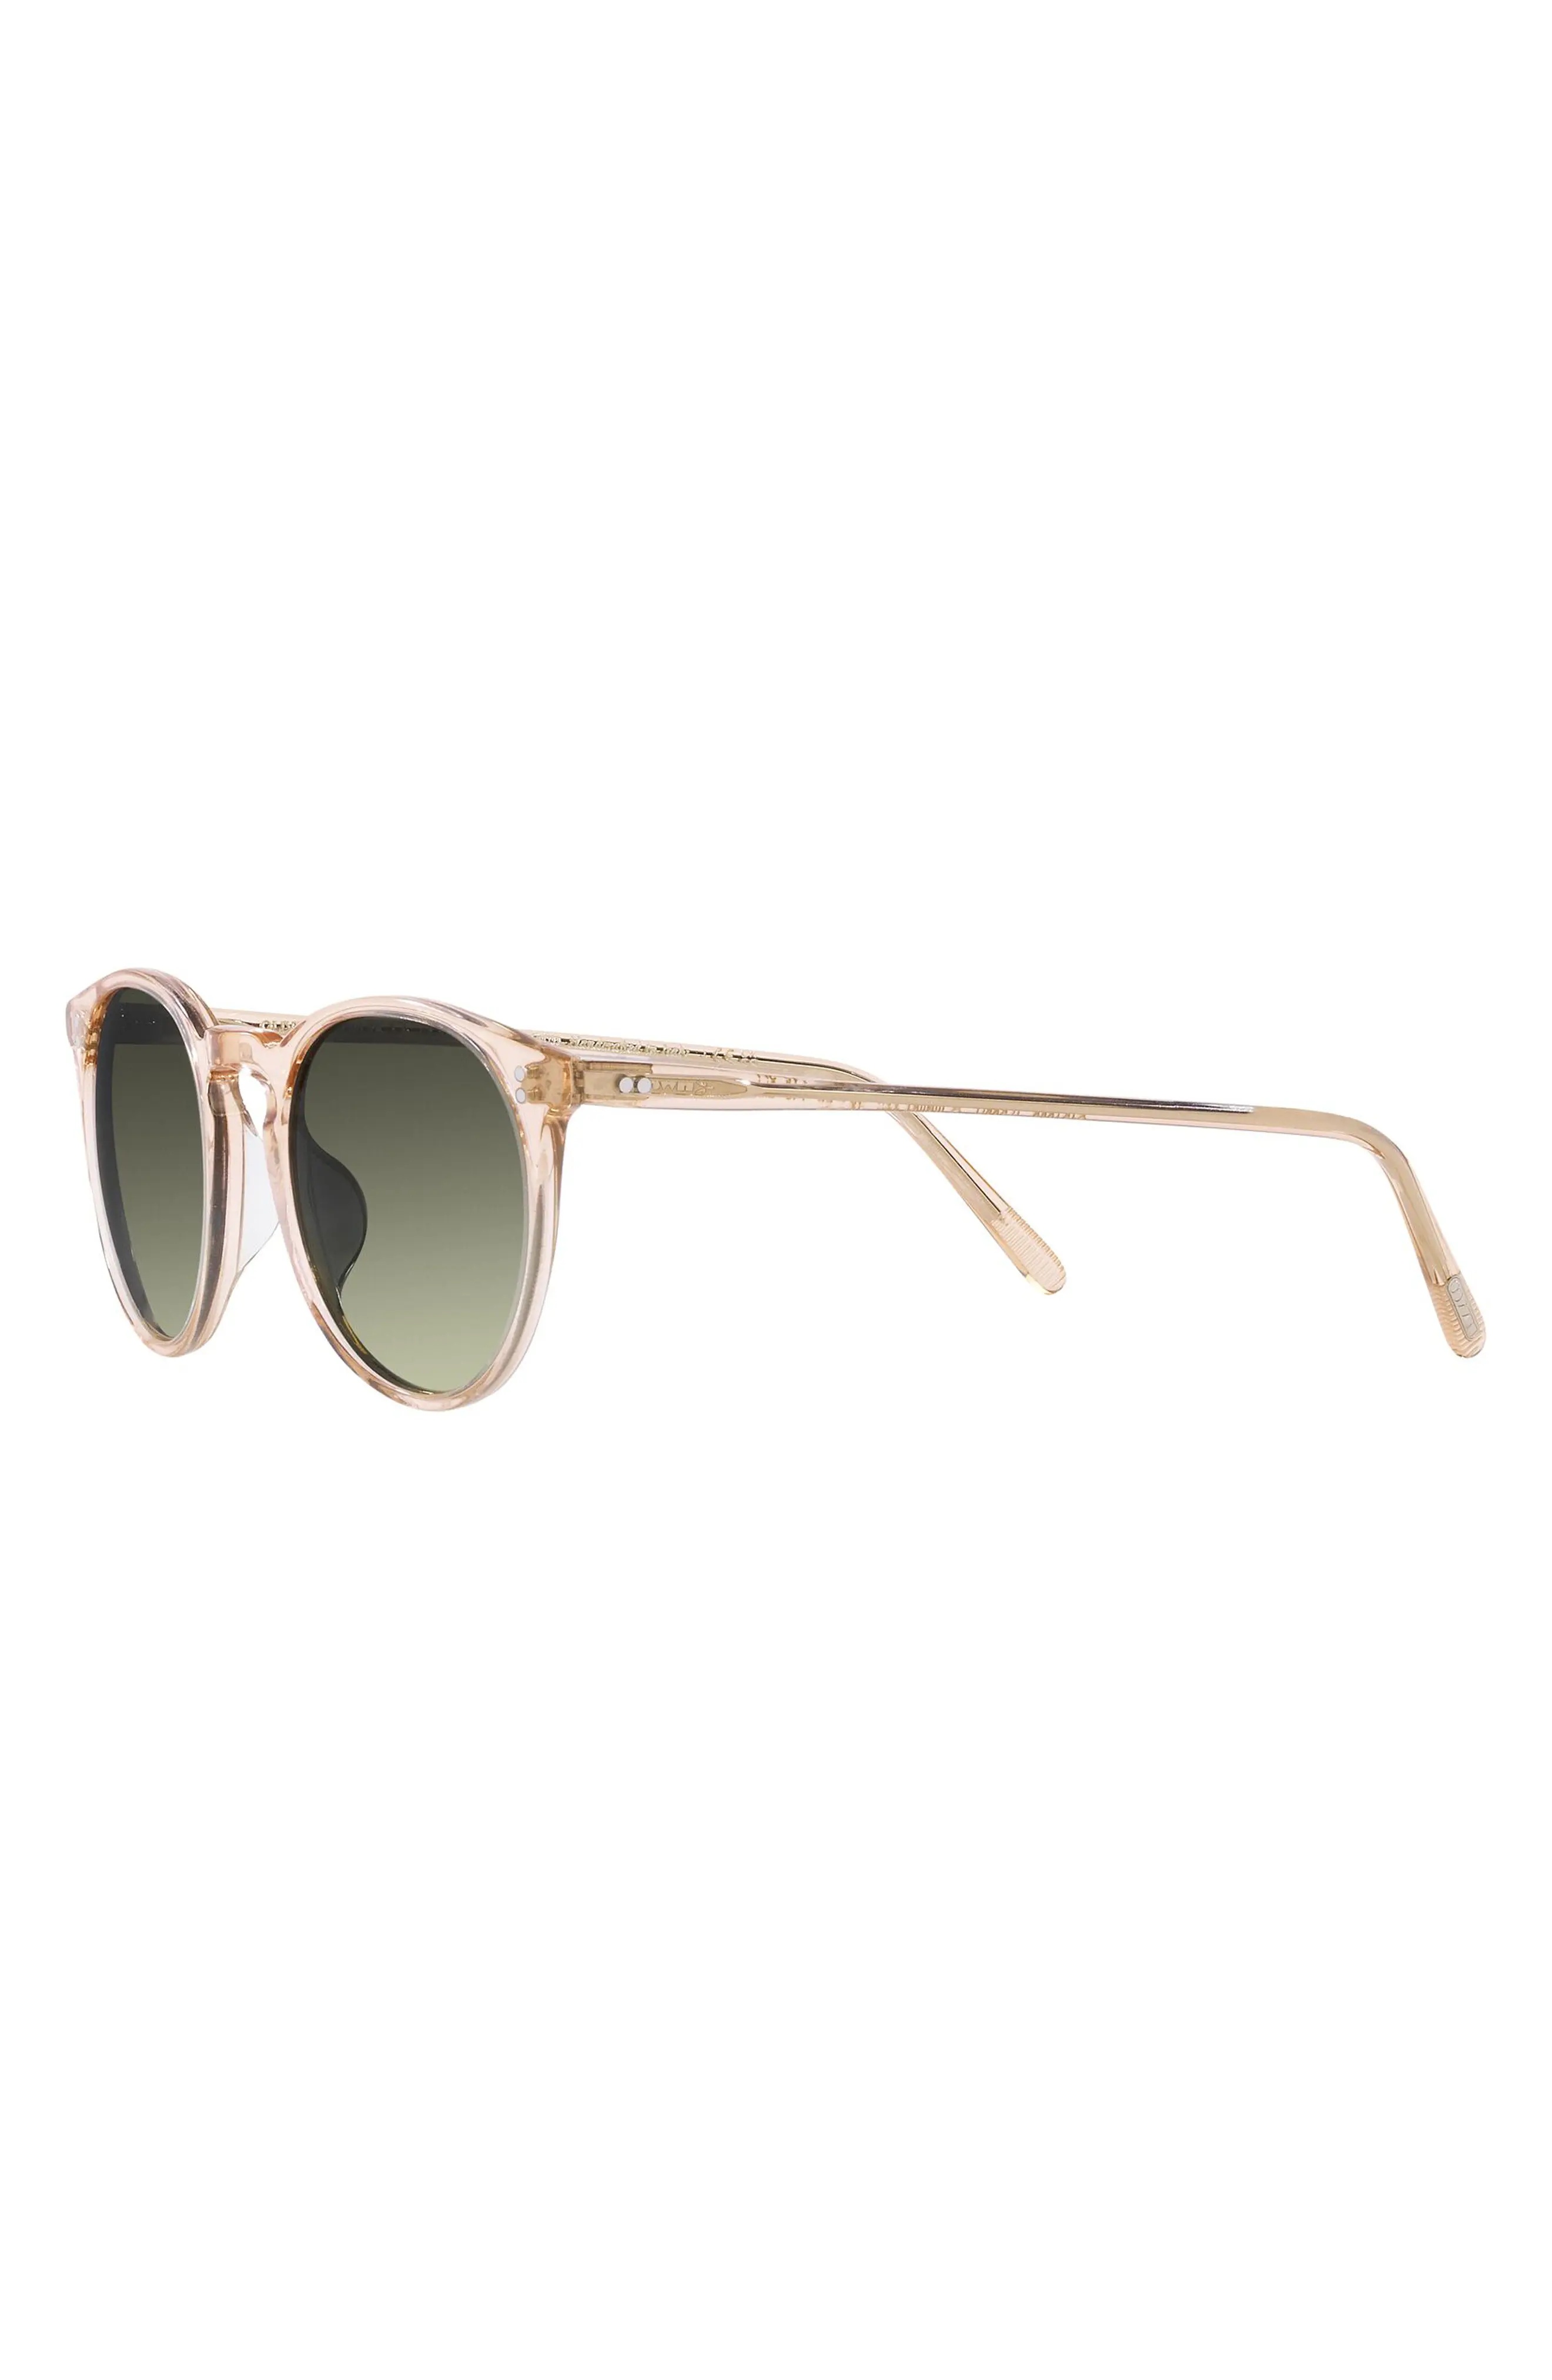 O'Malley 48mm Phantos Sunglasses - 4